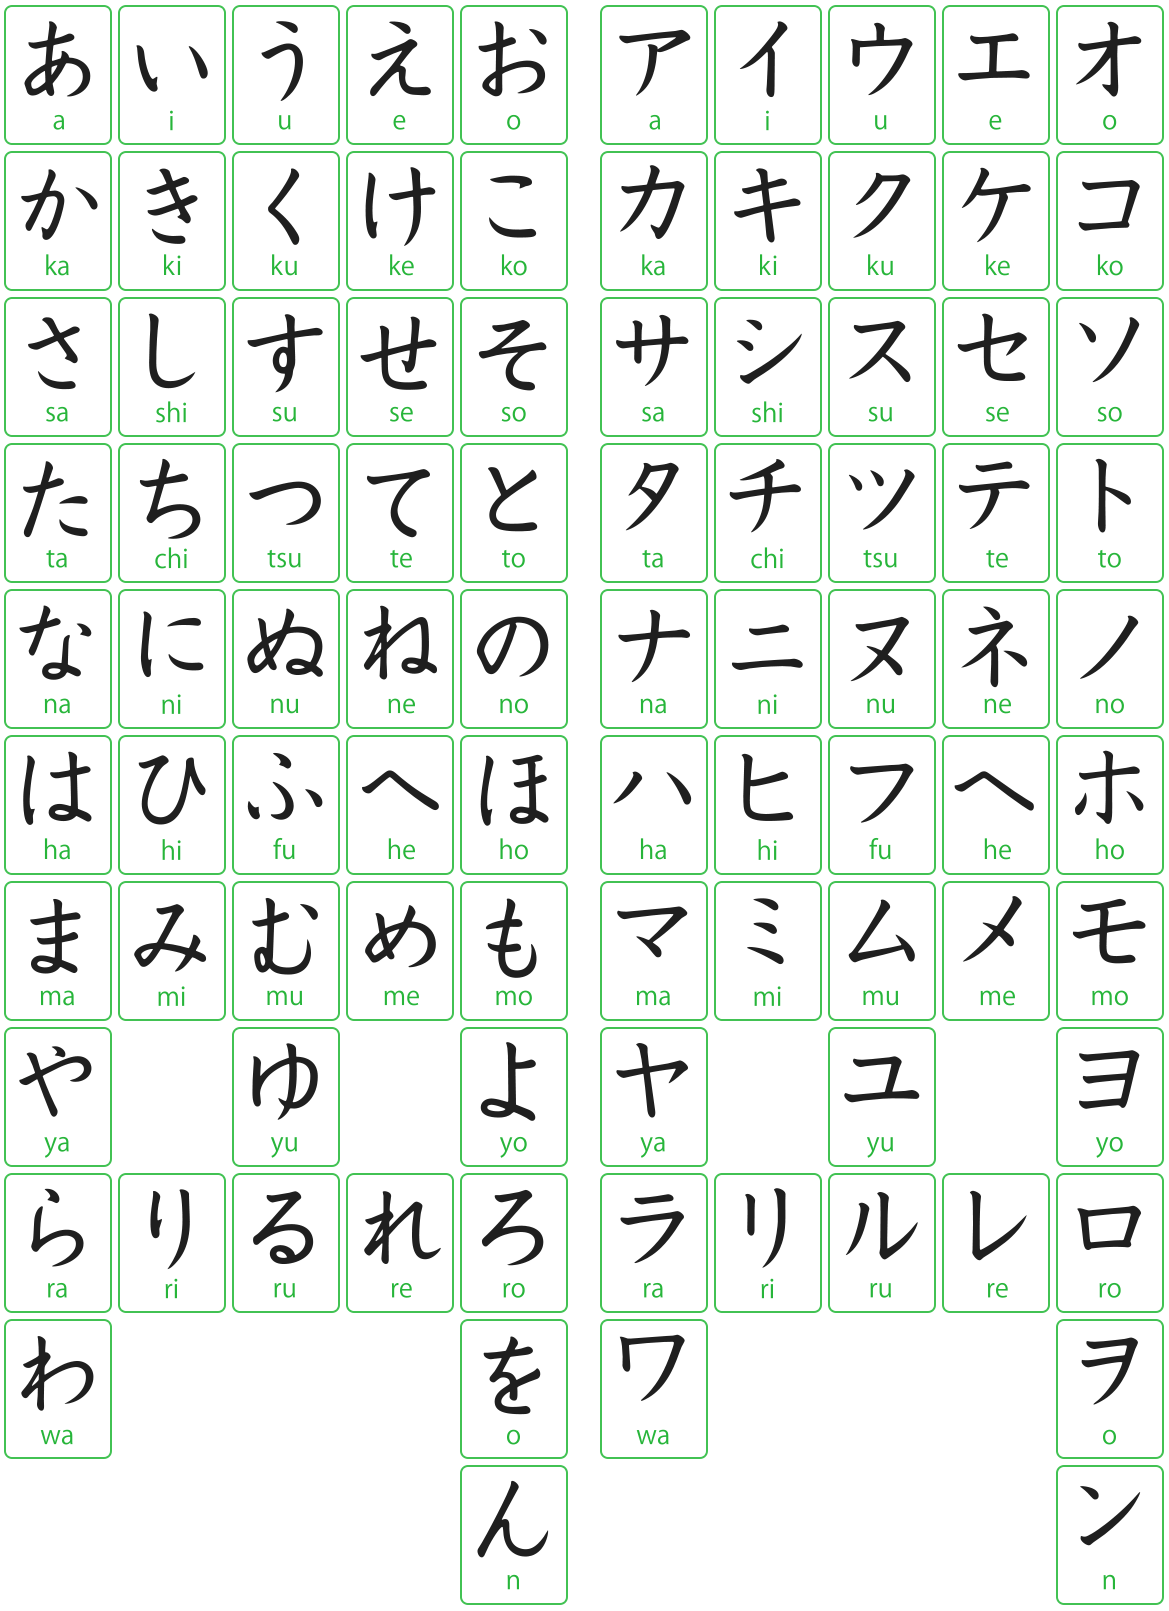 日语五十音图 元音